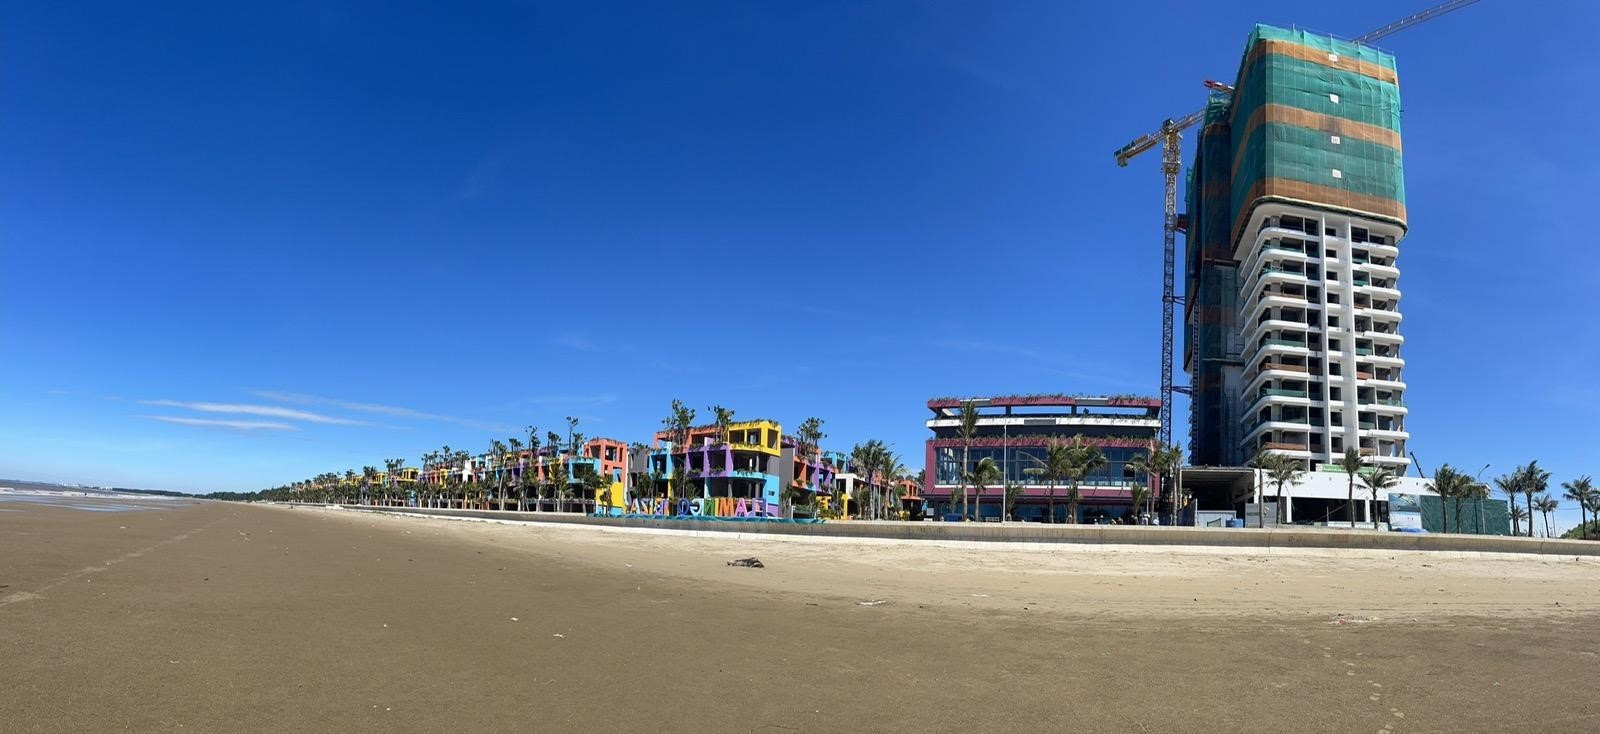 Toà Ibiza Party Resort và Trung tâm nghỉ dưỡng Bốn Mùa (ngoài cùng bên phải) đã hoàn thành những hạng mục quan trọng nhất, sẵn sàng đi vào hoạt động trong thời gian sắp tới